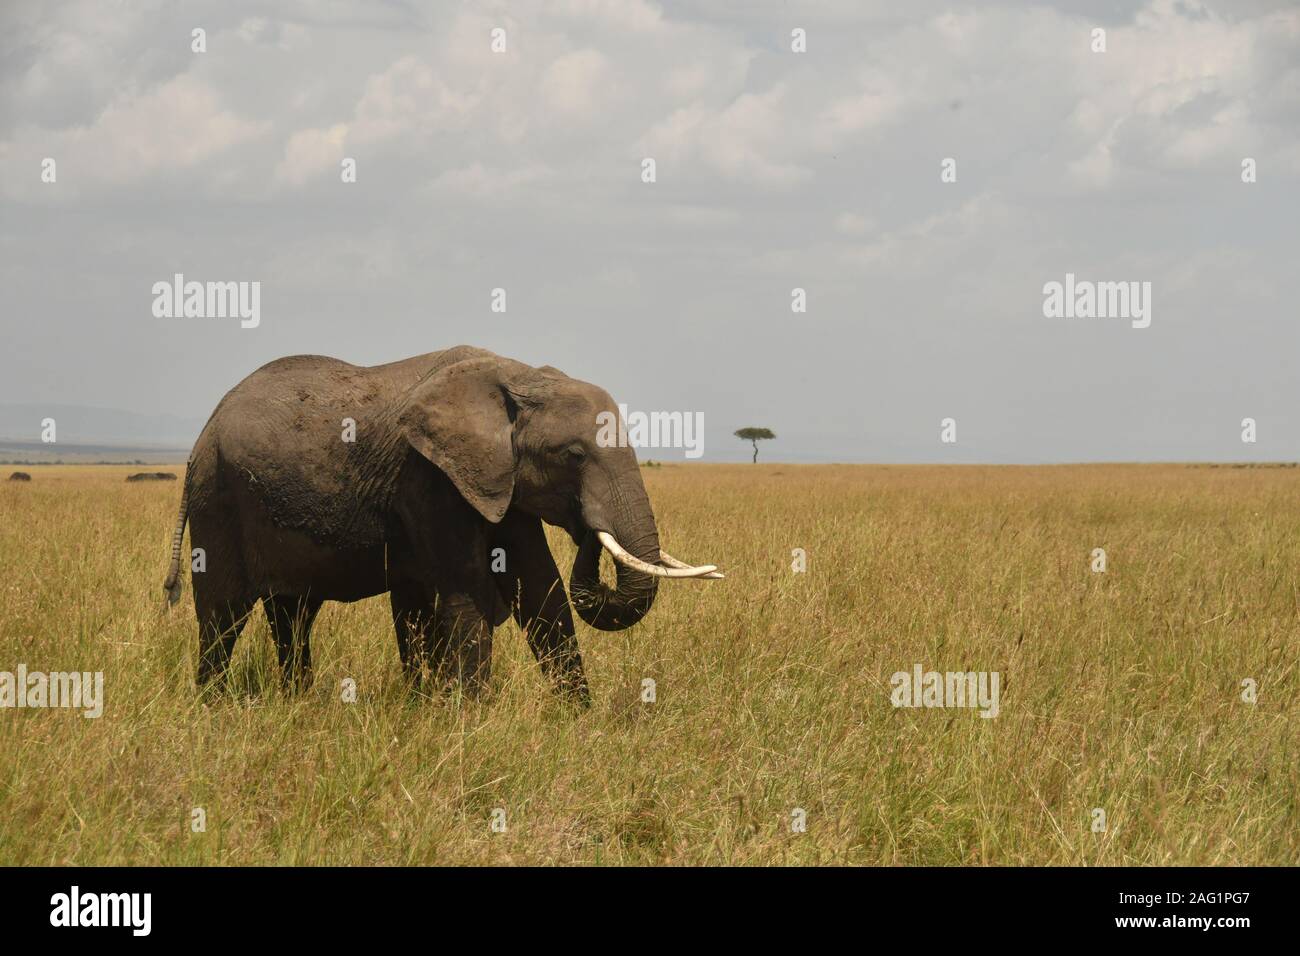 Un éléphant avec sa trompe pour soulever l'herbe dans sa bouche pour manger. Seul un acacia dans l'arrière-plan lointain Banque D'Images